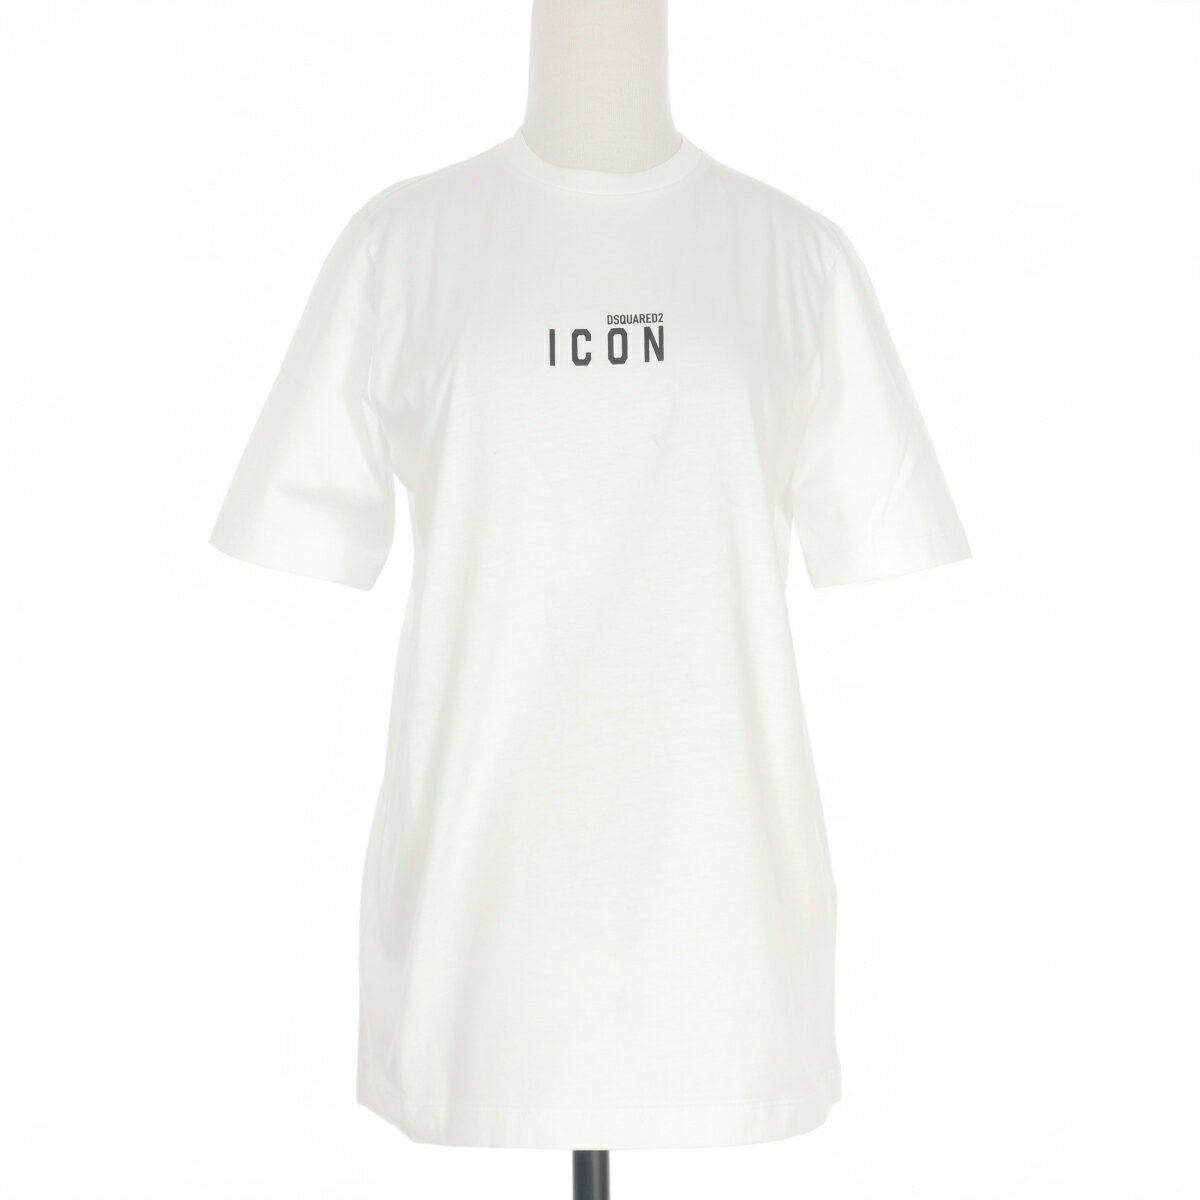 【中古】未使用品 ディースクエアード DSQUARED2 22SS Icon Mini Logo T-Shirt アイコン ロゴプリント Tシャツ カットソー 半袖 S ホワイト 白 S80GC0009 国内正規 レディース 【ベクトル 古着】 240118